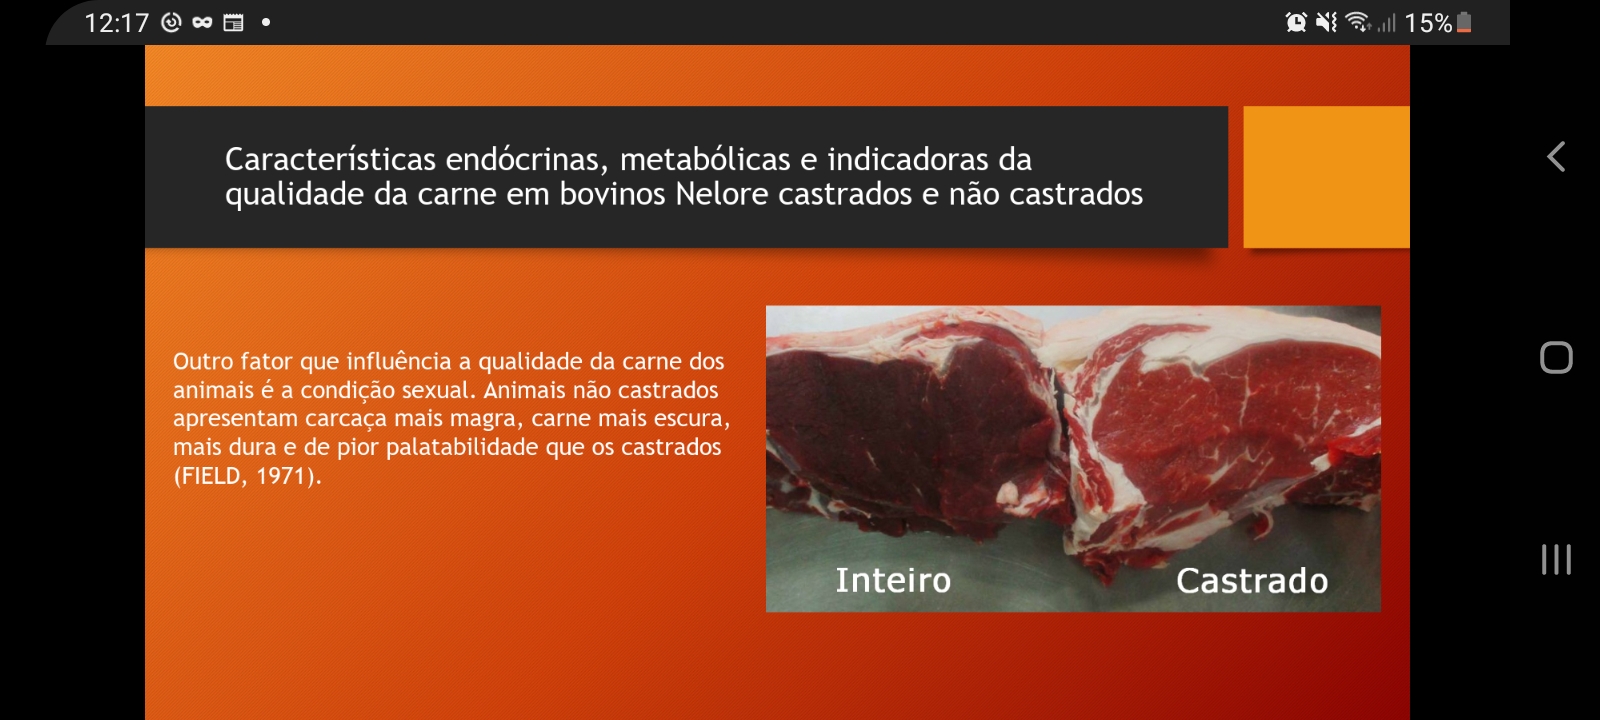 Características endócrinas, metabólicas e indicadoras da qualidade de carne em bovinos nelore castrados e não castrados